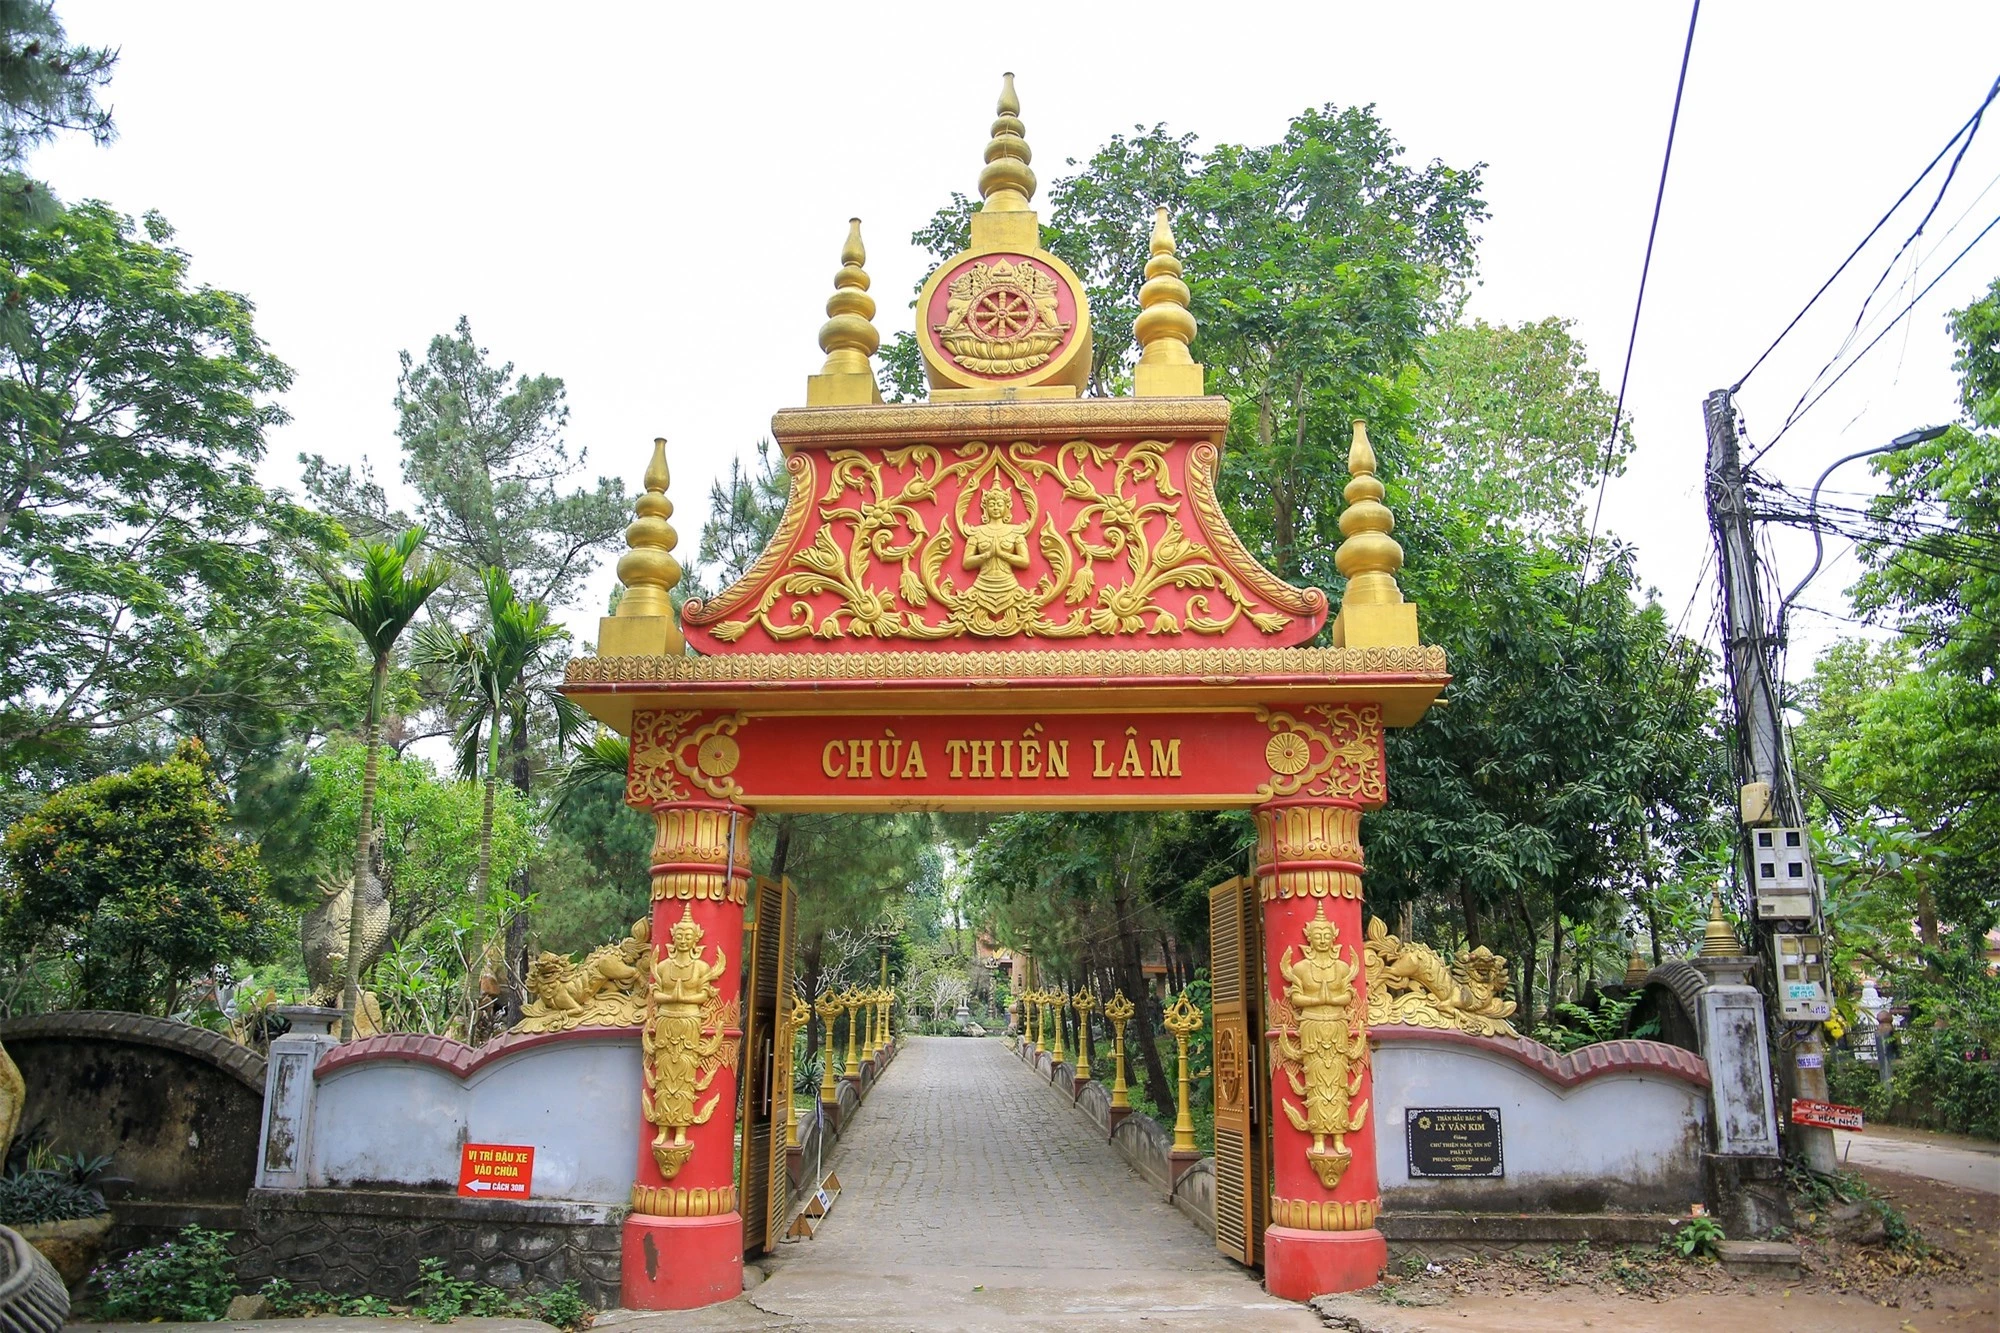 Từ cổng vào chùa, du khách đã ấn tượng với phong cách Phật giáo Nam tông, cùng với màu vàng chủ đạo.